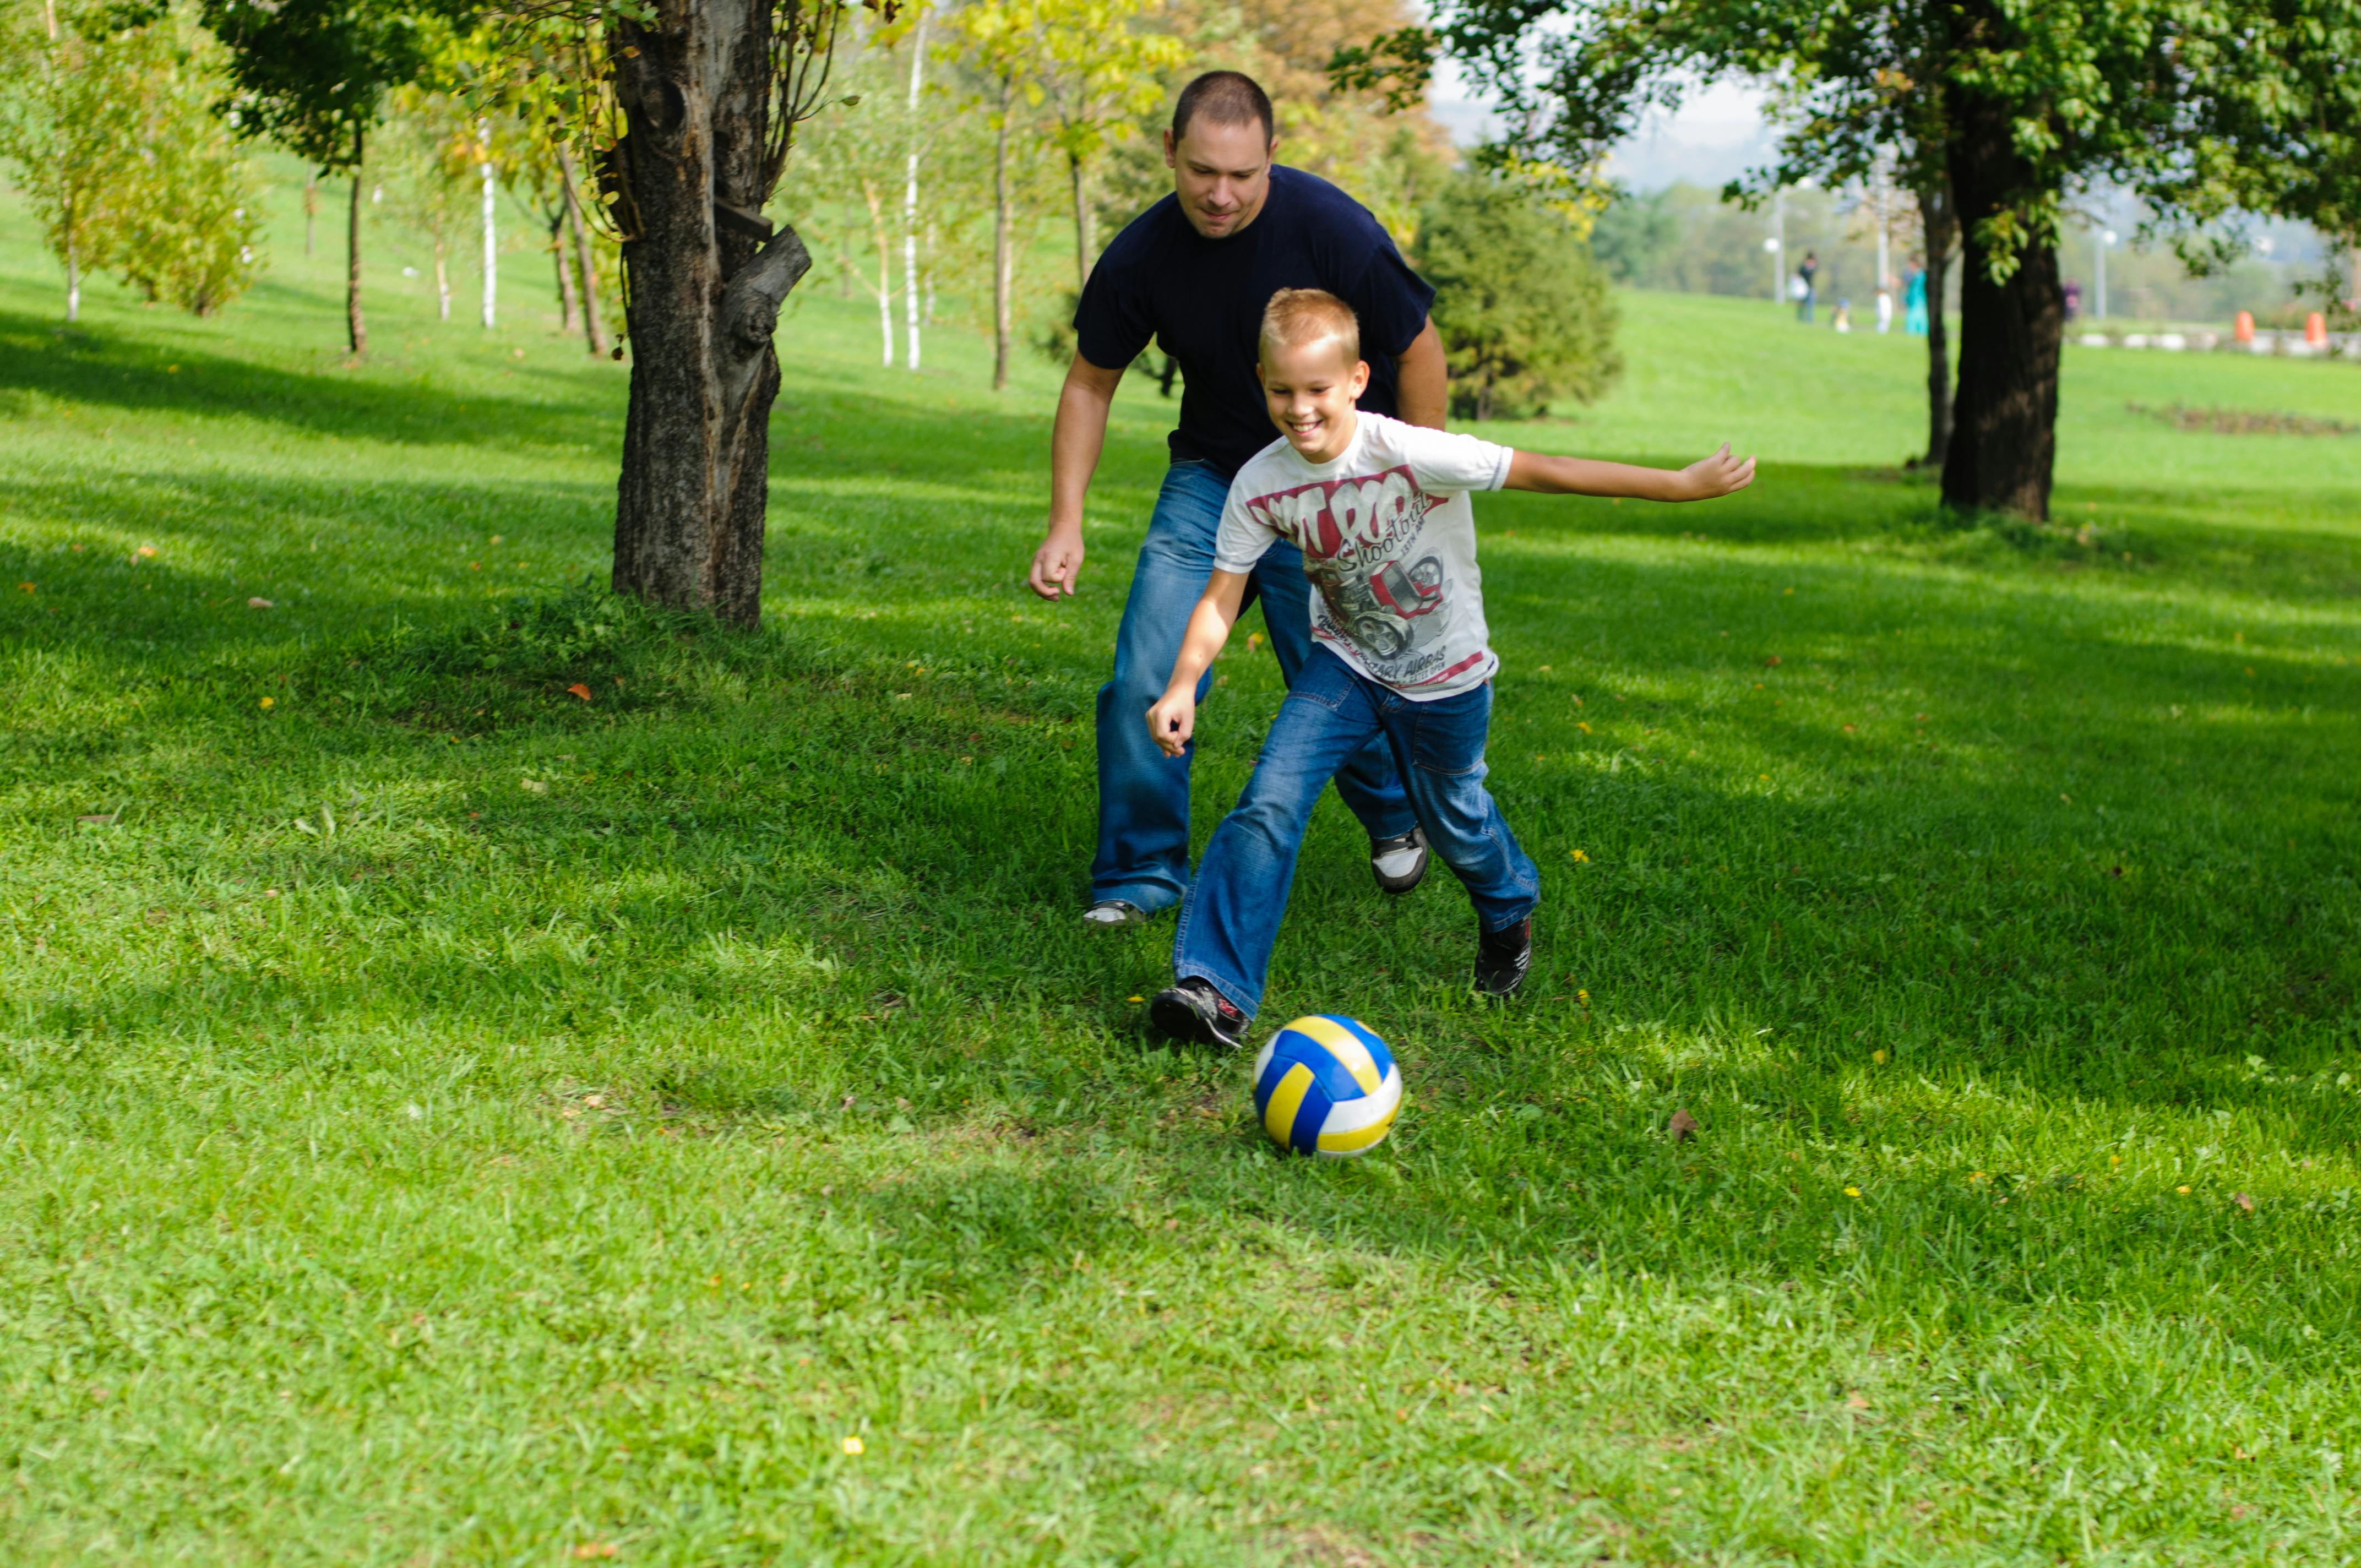 Far og søn spiller fodbold i haven.